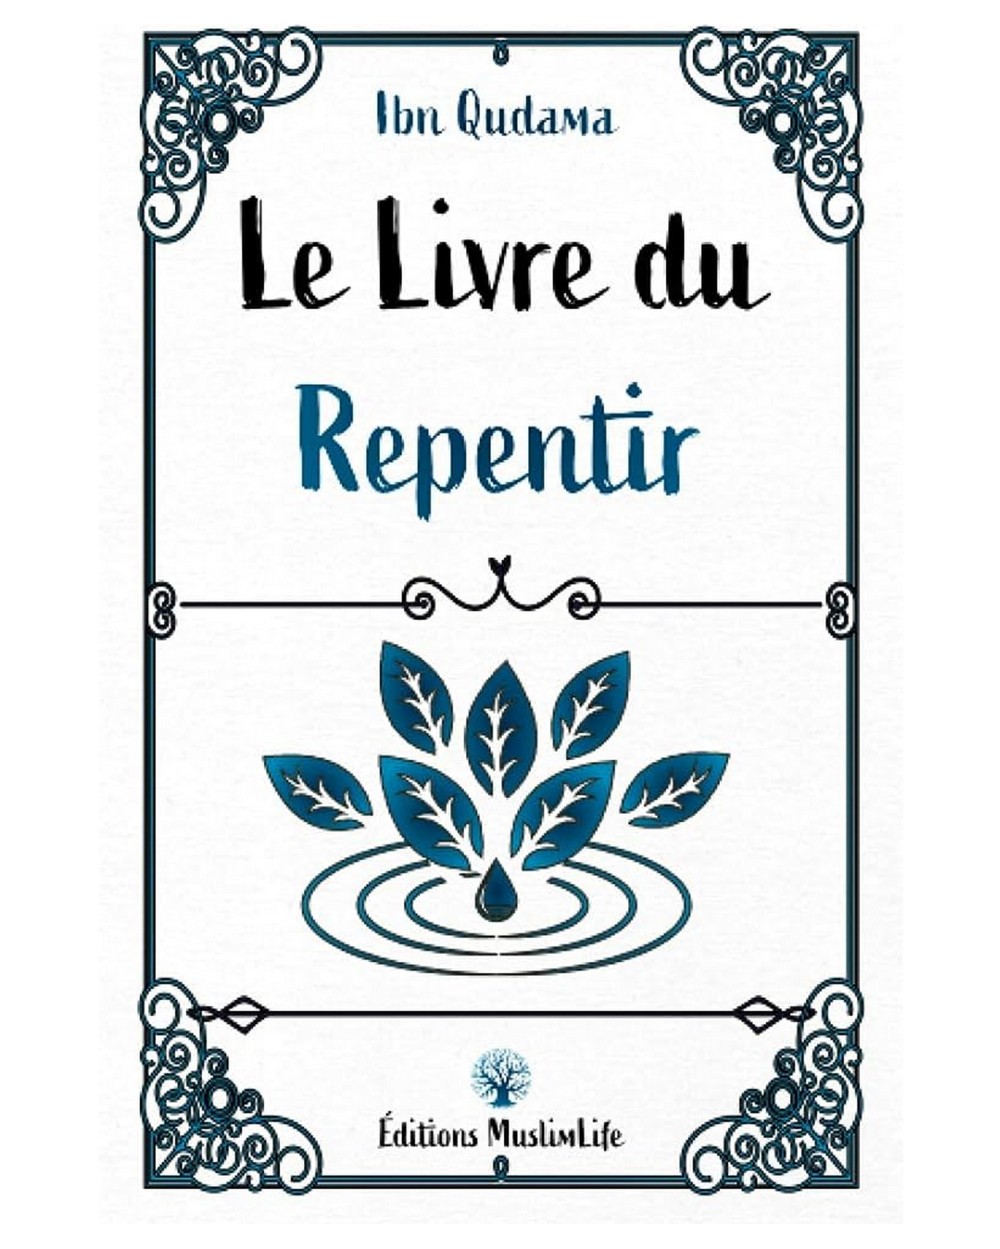 Le livre du repentir - Ibn Qudama - Editions Muslimlife